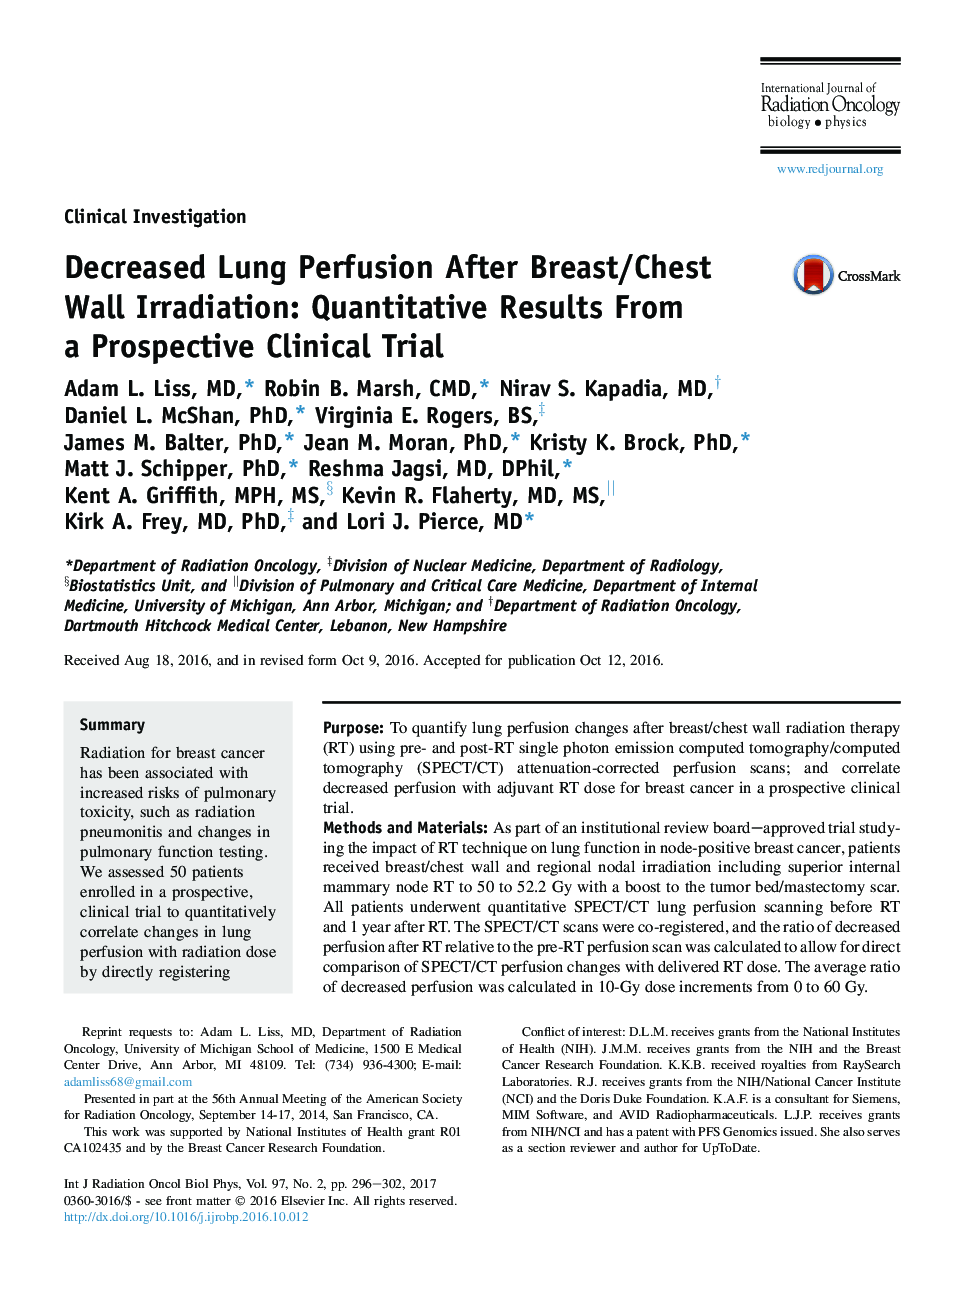 کاهش پرفیوژن ریه پس از تابش پرده سینه / قفسه سینه: نتایج کمی از یک آزمایش بالینی بالقوه 